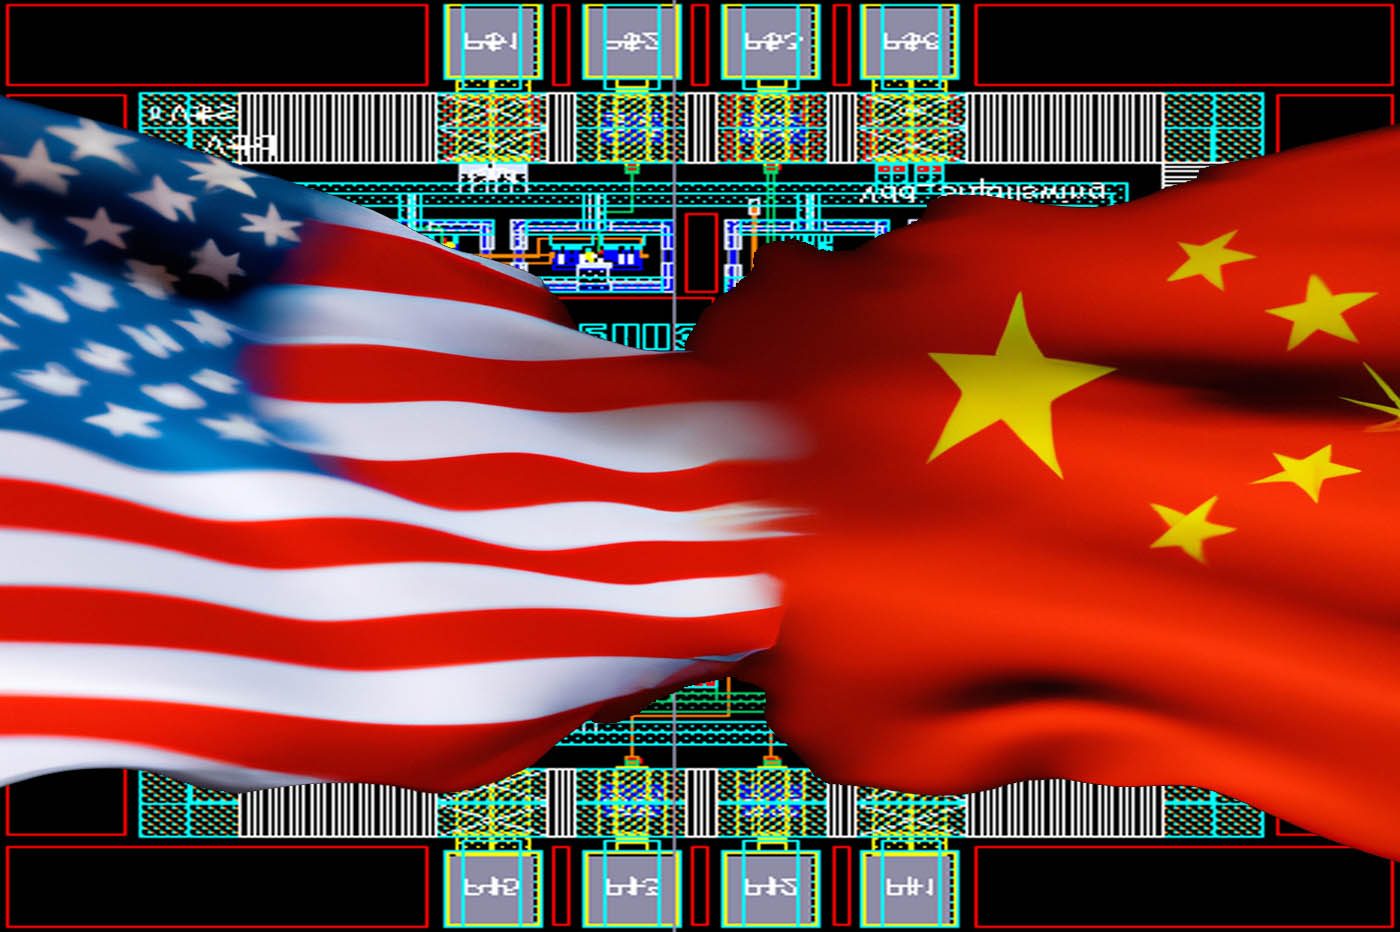 Les USA torpillent le processeur souverain chinois avec leur arme fatale : les logiciels de conception de puces